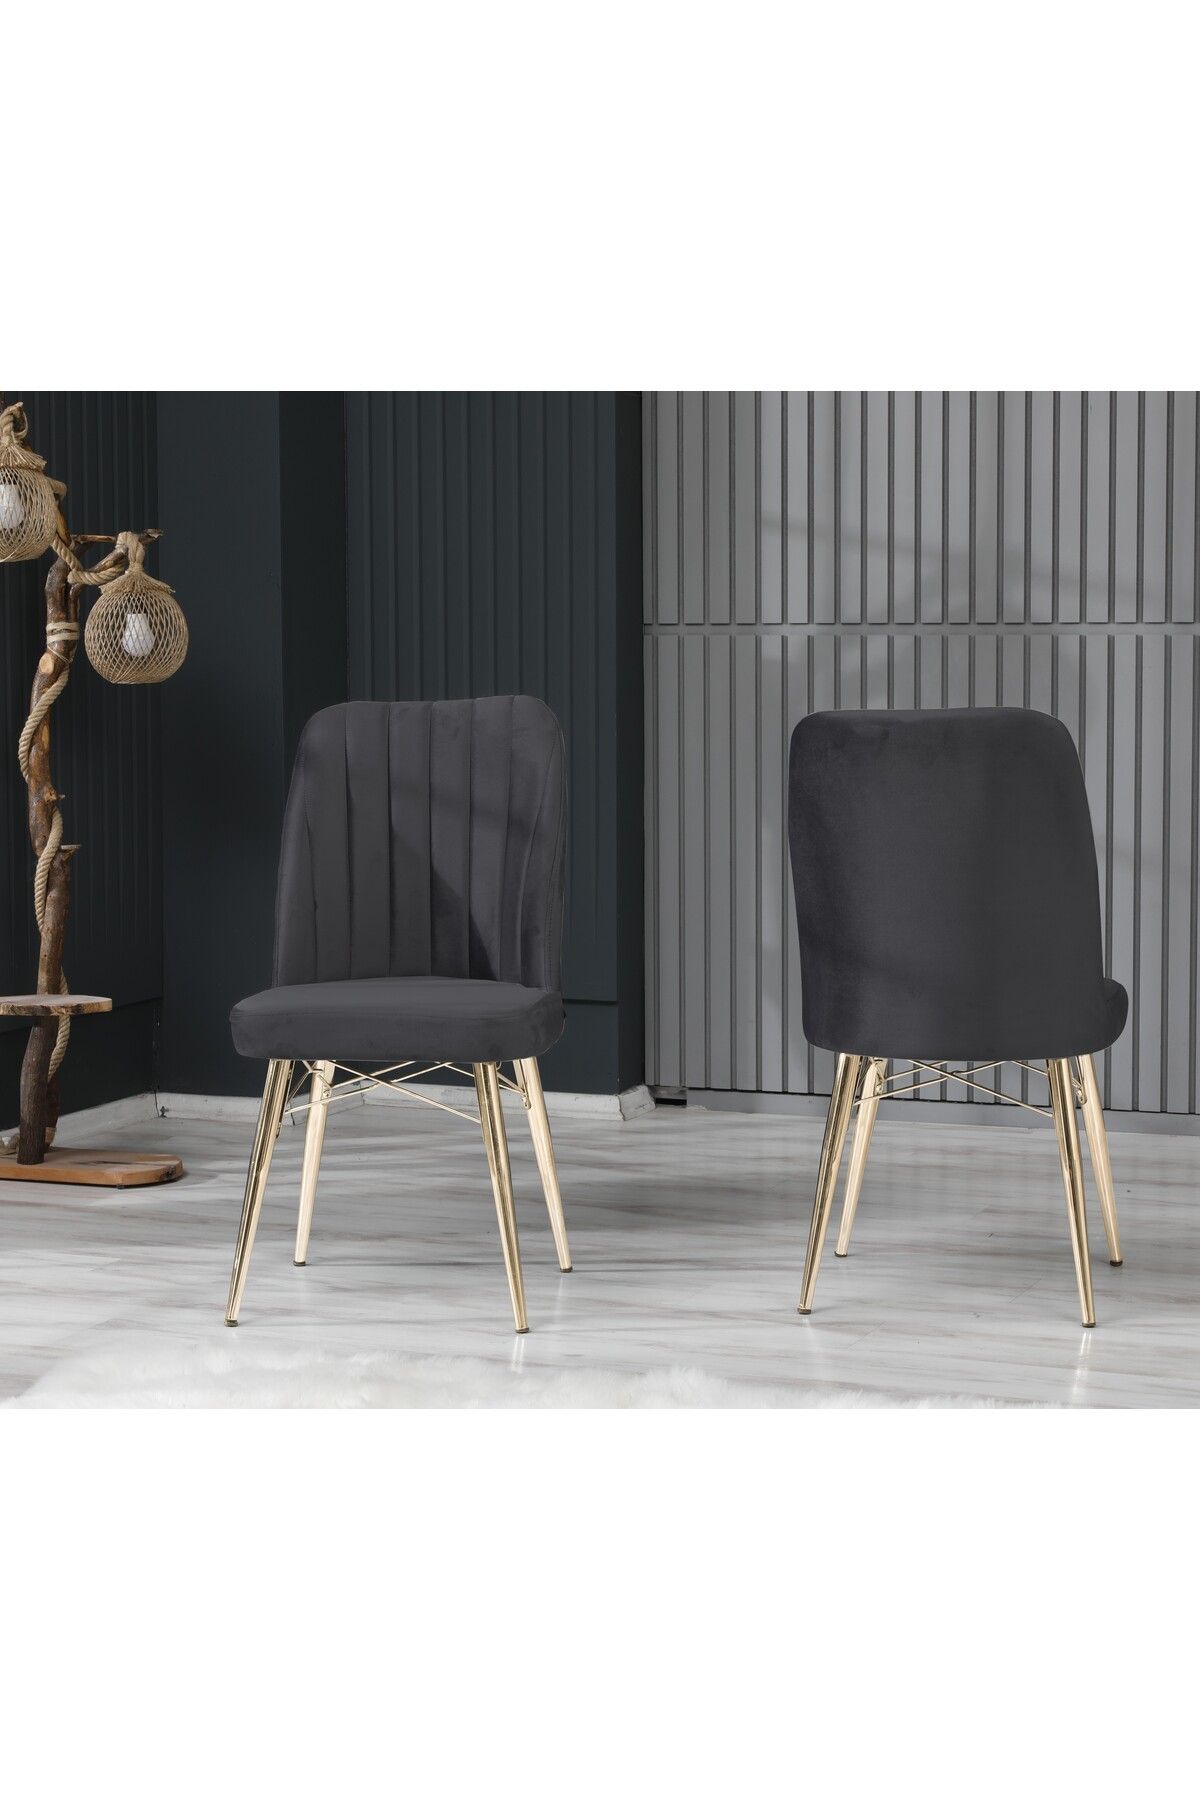 EZU Salon Mutfak Sandalyeleri Seher Antrasit Gold Ayaklı Sandalye